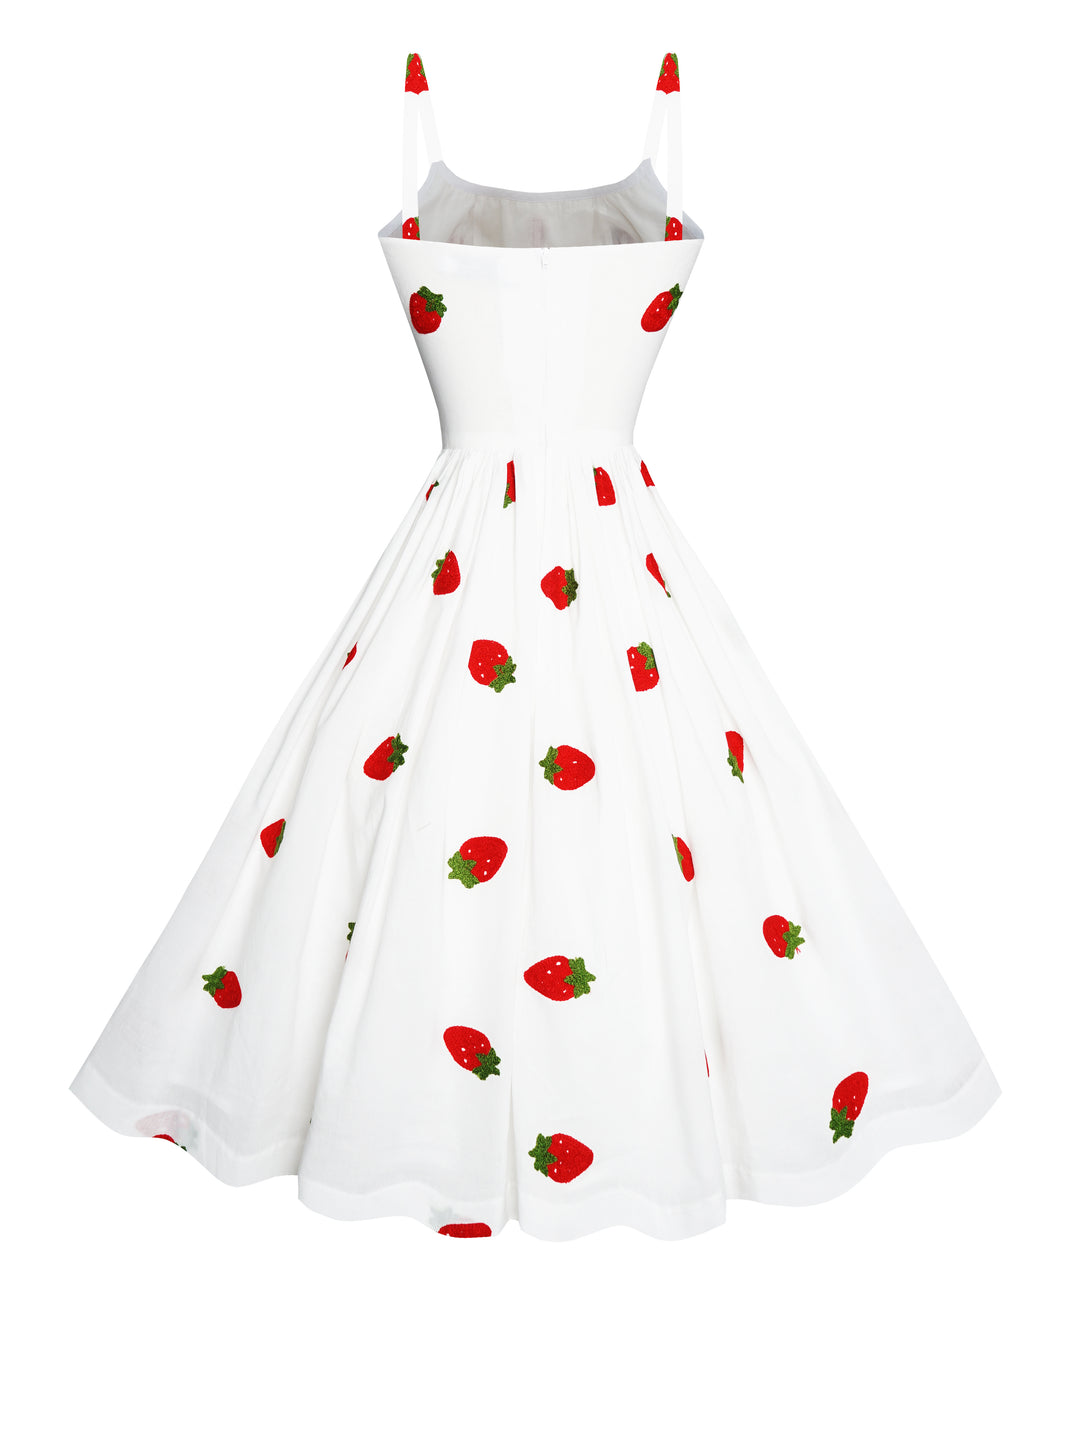 MTO - Grace Dress in "Strawberry Delight"